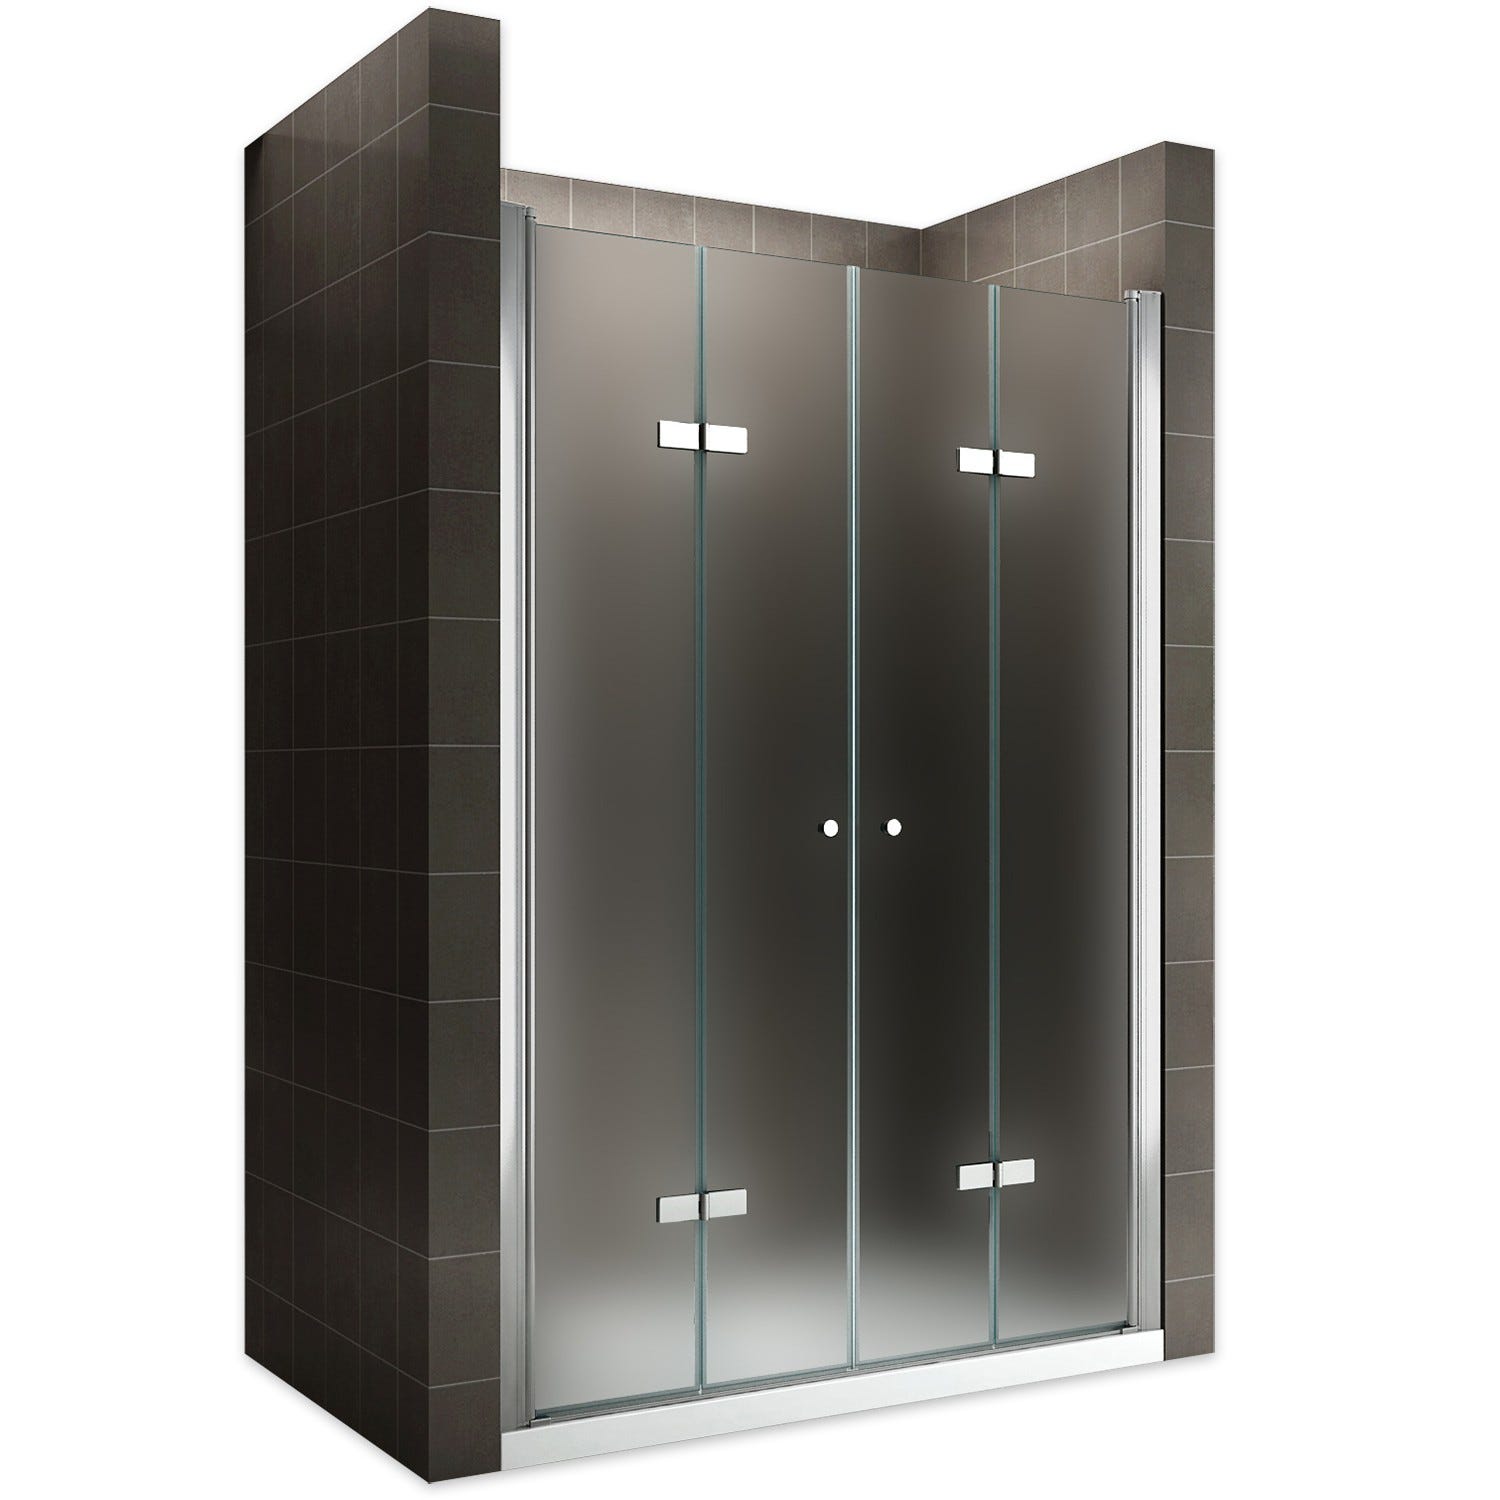 EMMY Porte de douche pliante pivotante H 185 cm largeur réglable 84 à 88 cm verre opaque 0